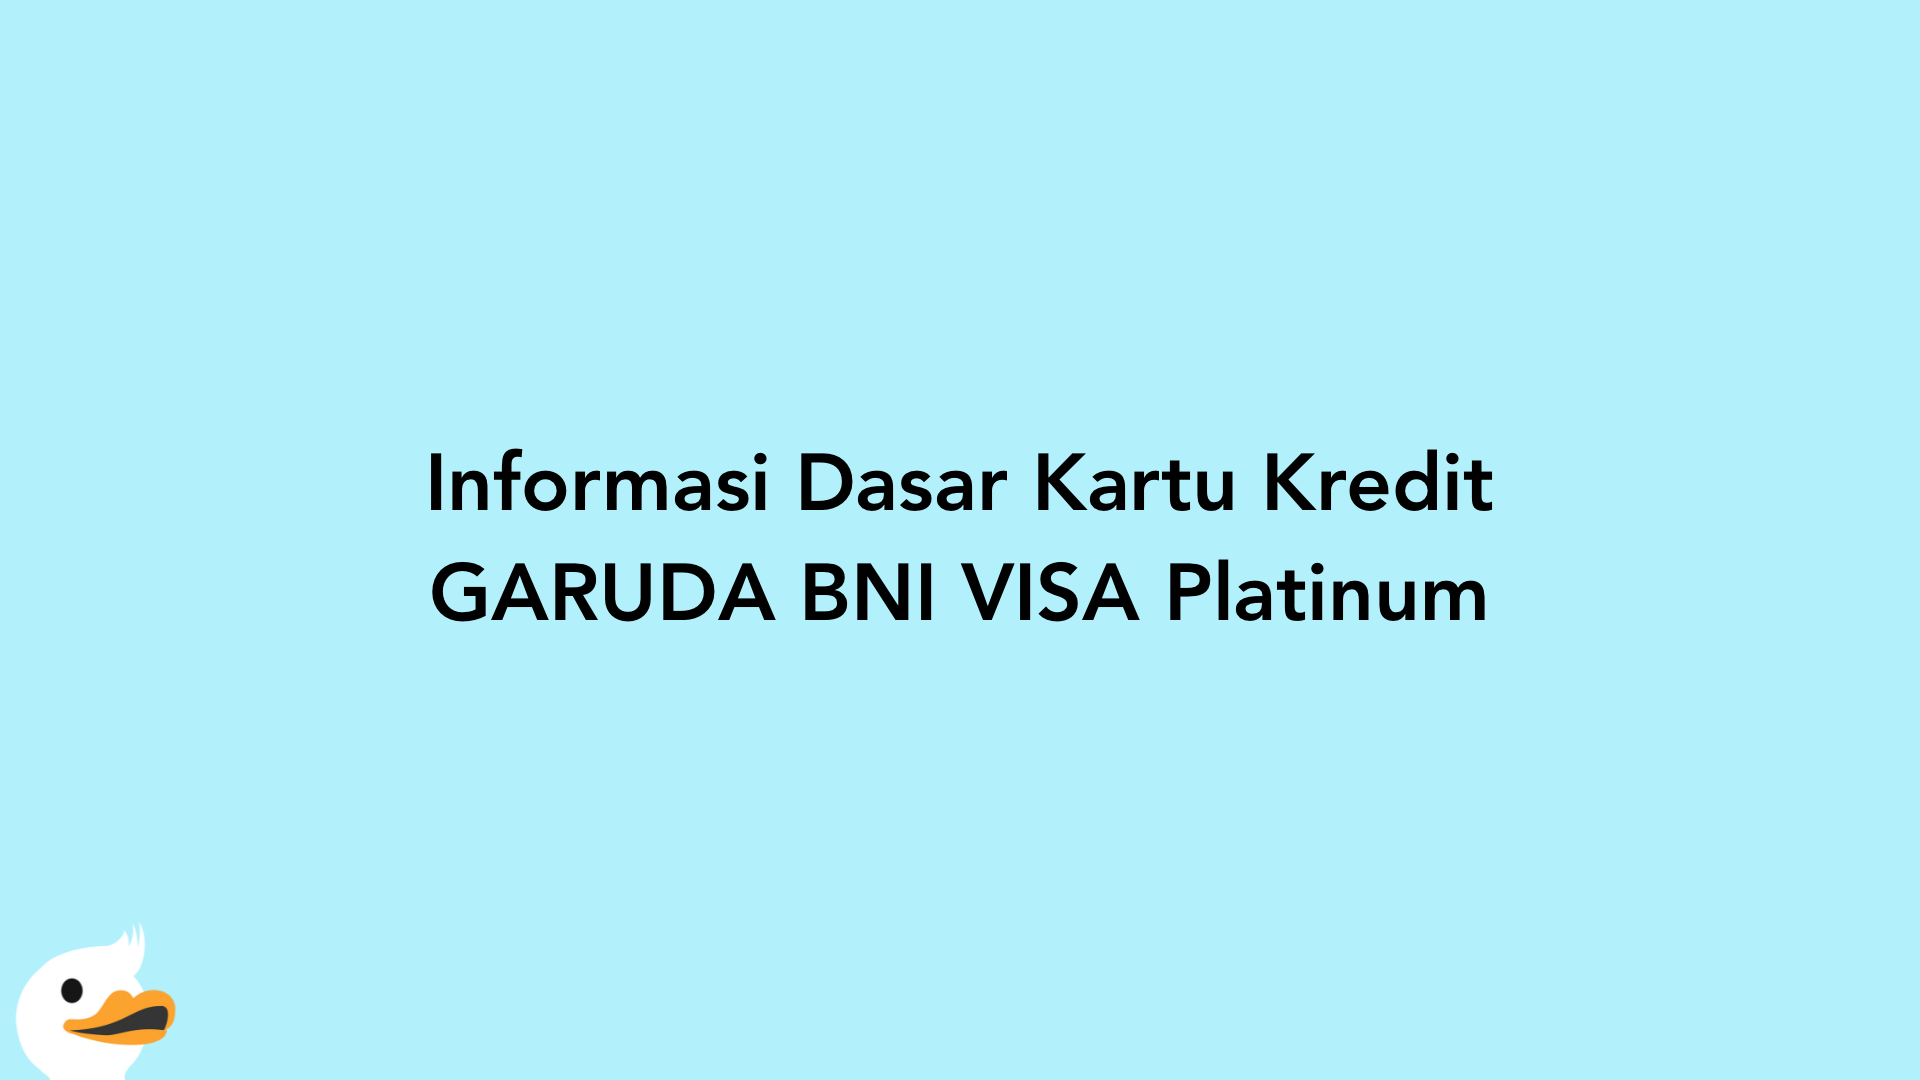 Informasi Dasar Kartu Kredit GARUDA BNI VISA Platinum